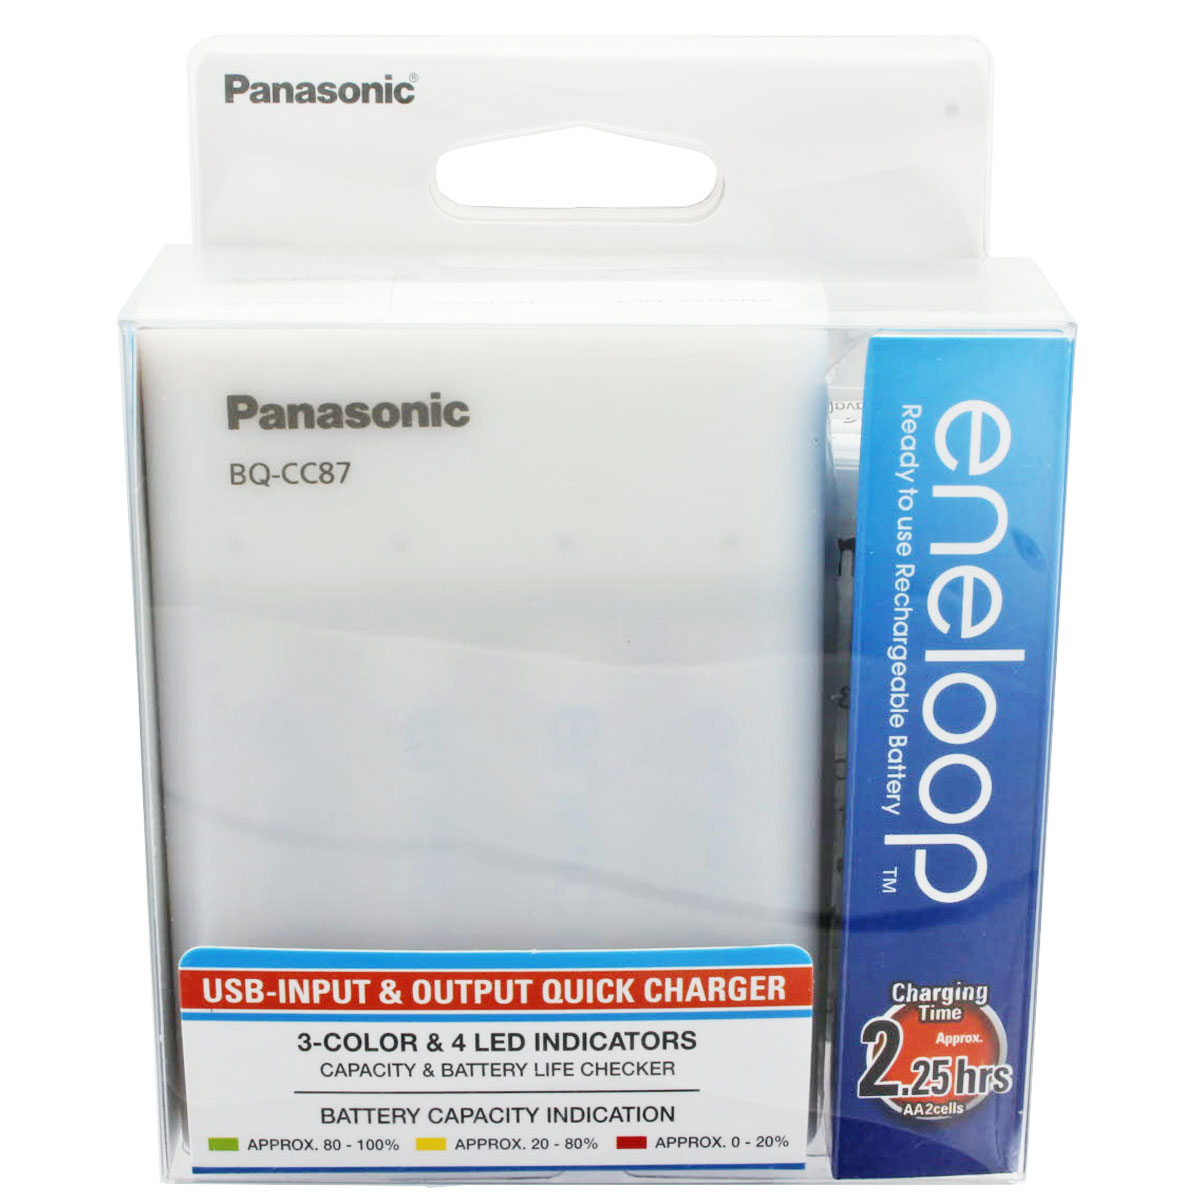 Panasonic eneloop Chargeur Rapide USB Chargeur Rapide USB avec 4X eneloop AA 